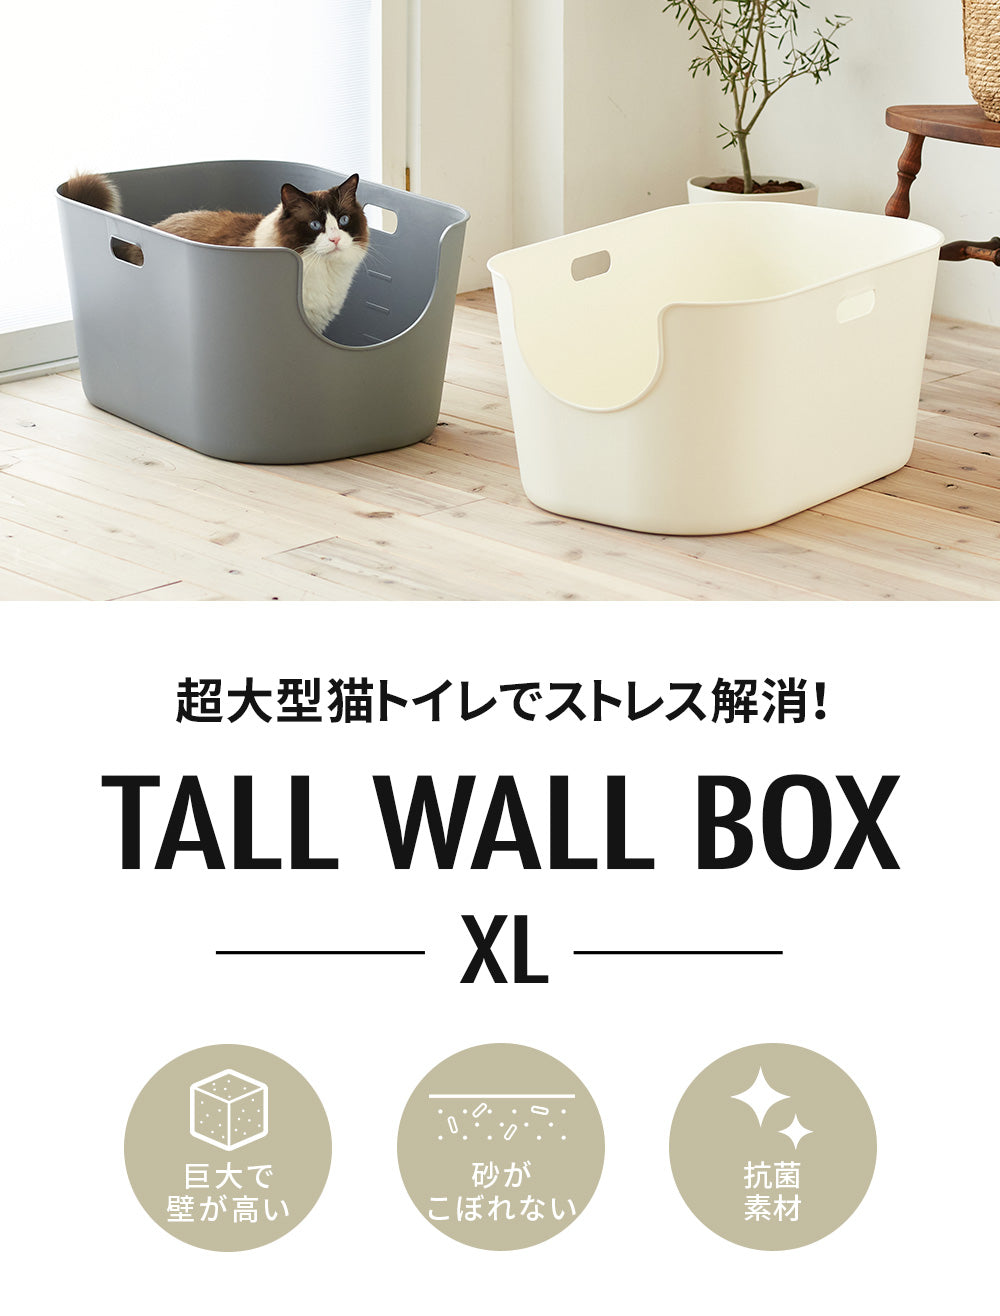 超大型猫トイレ 【TALL WALL BOX - XL】スプレー対策や砂の飛び散り防止に